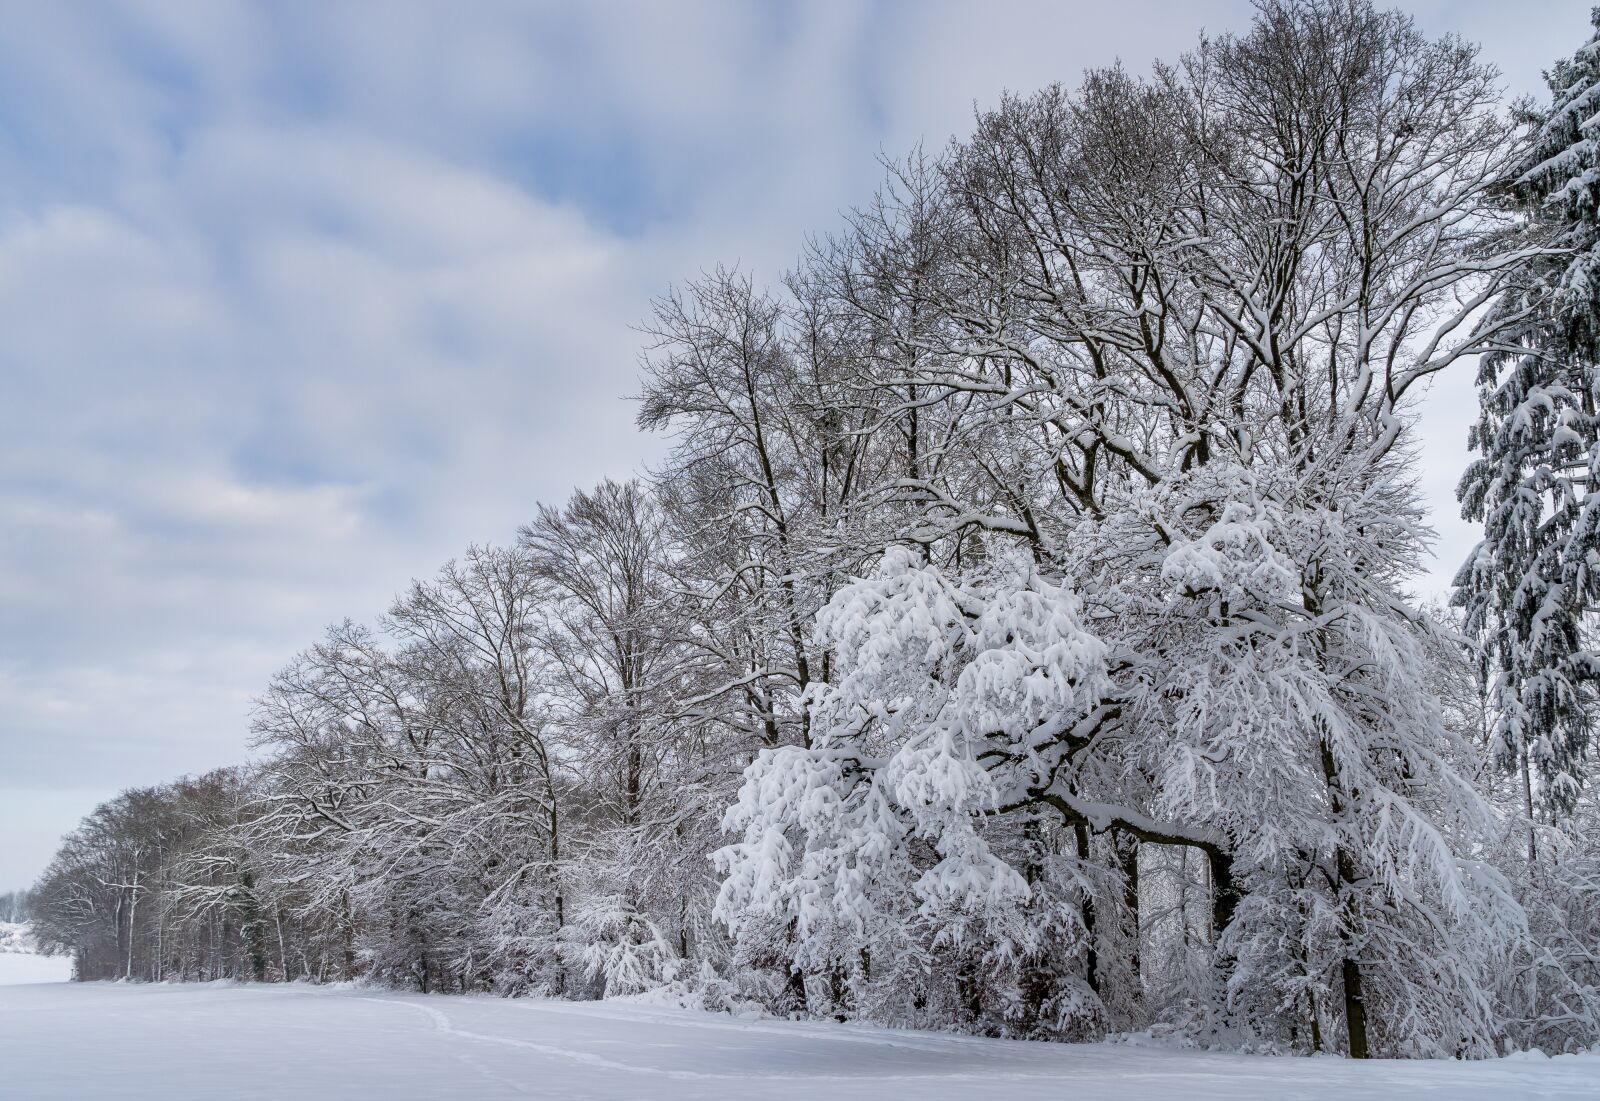 Sony a7 + Sony Vario Tessar T* FE 24-70mm F4 ZA OSS sample photo. Winter, landscape, snow photography